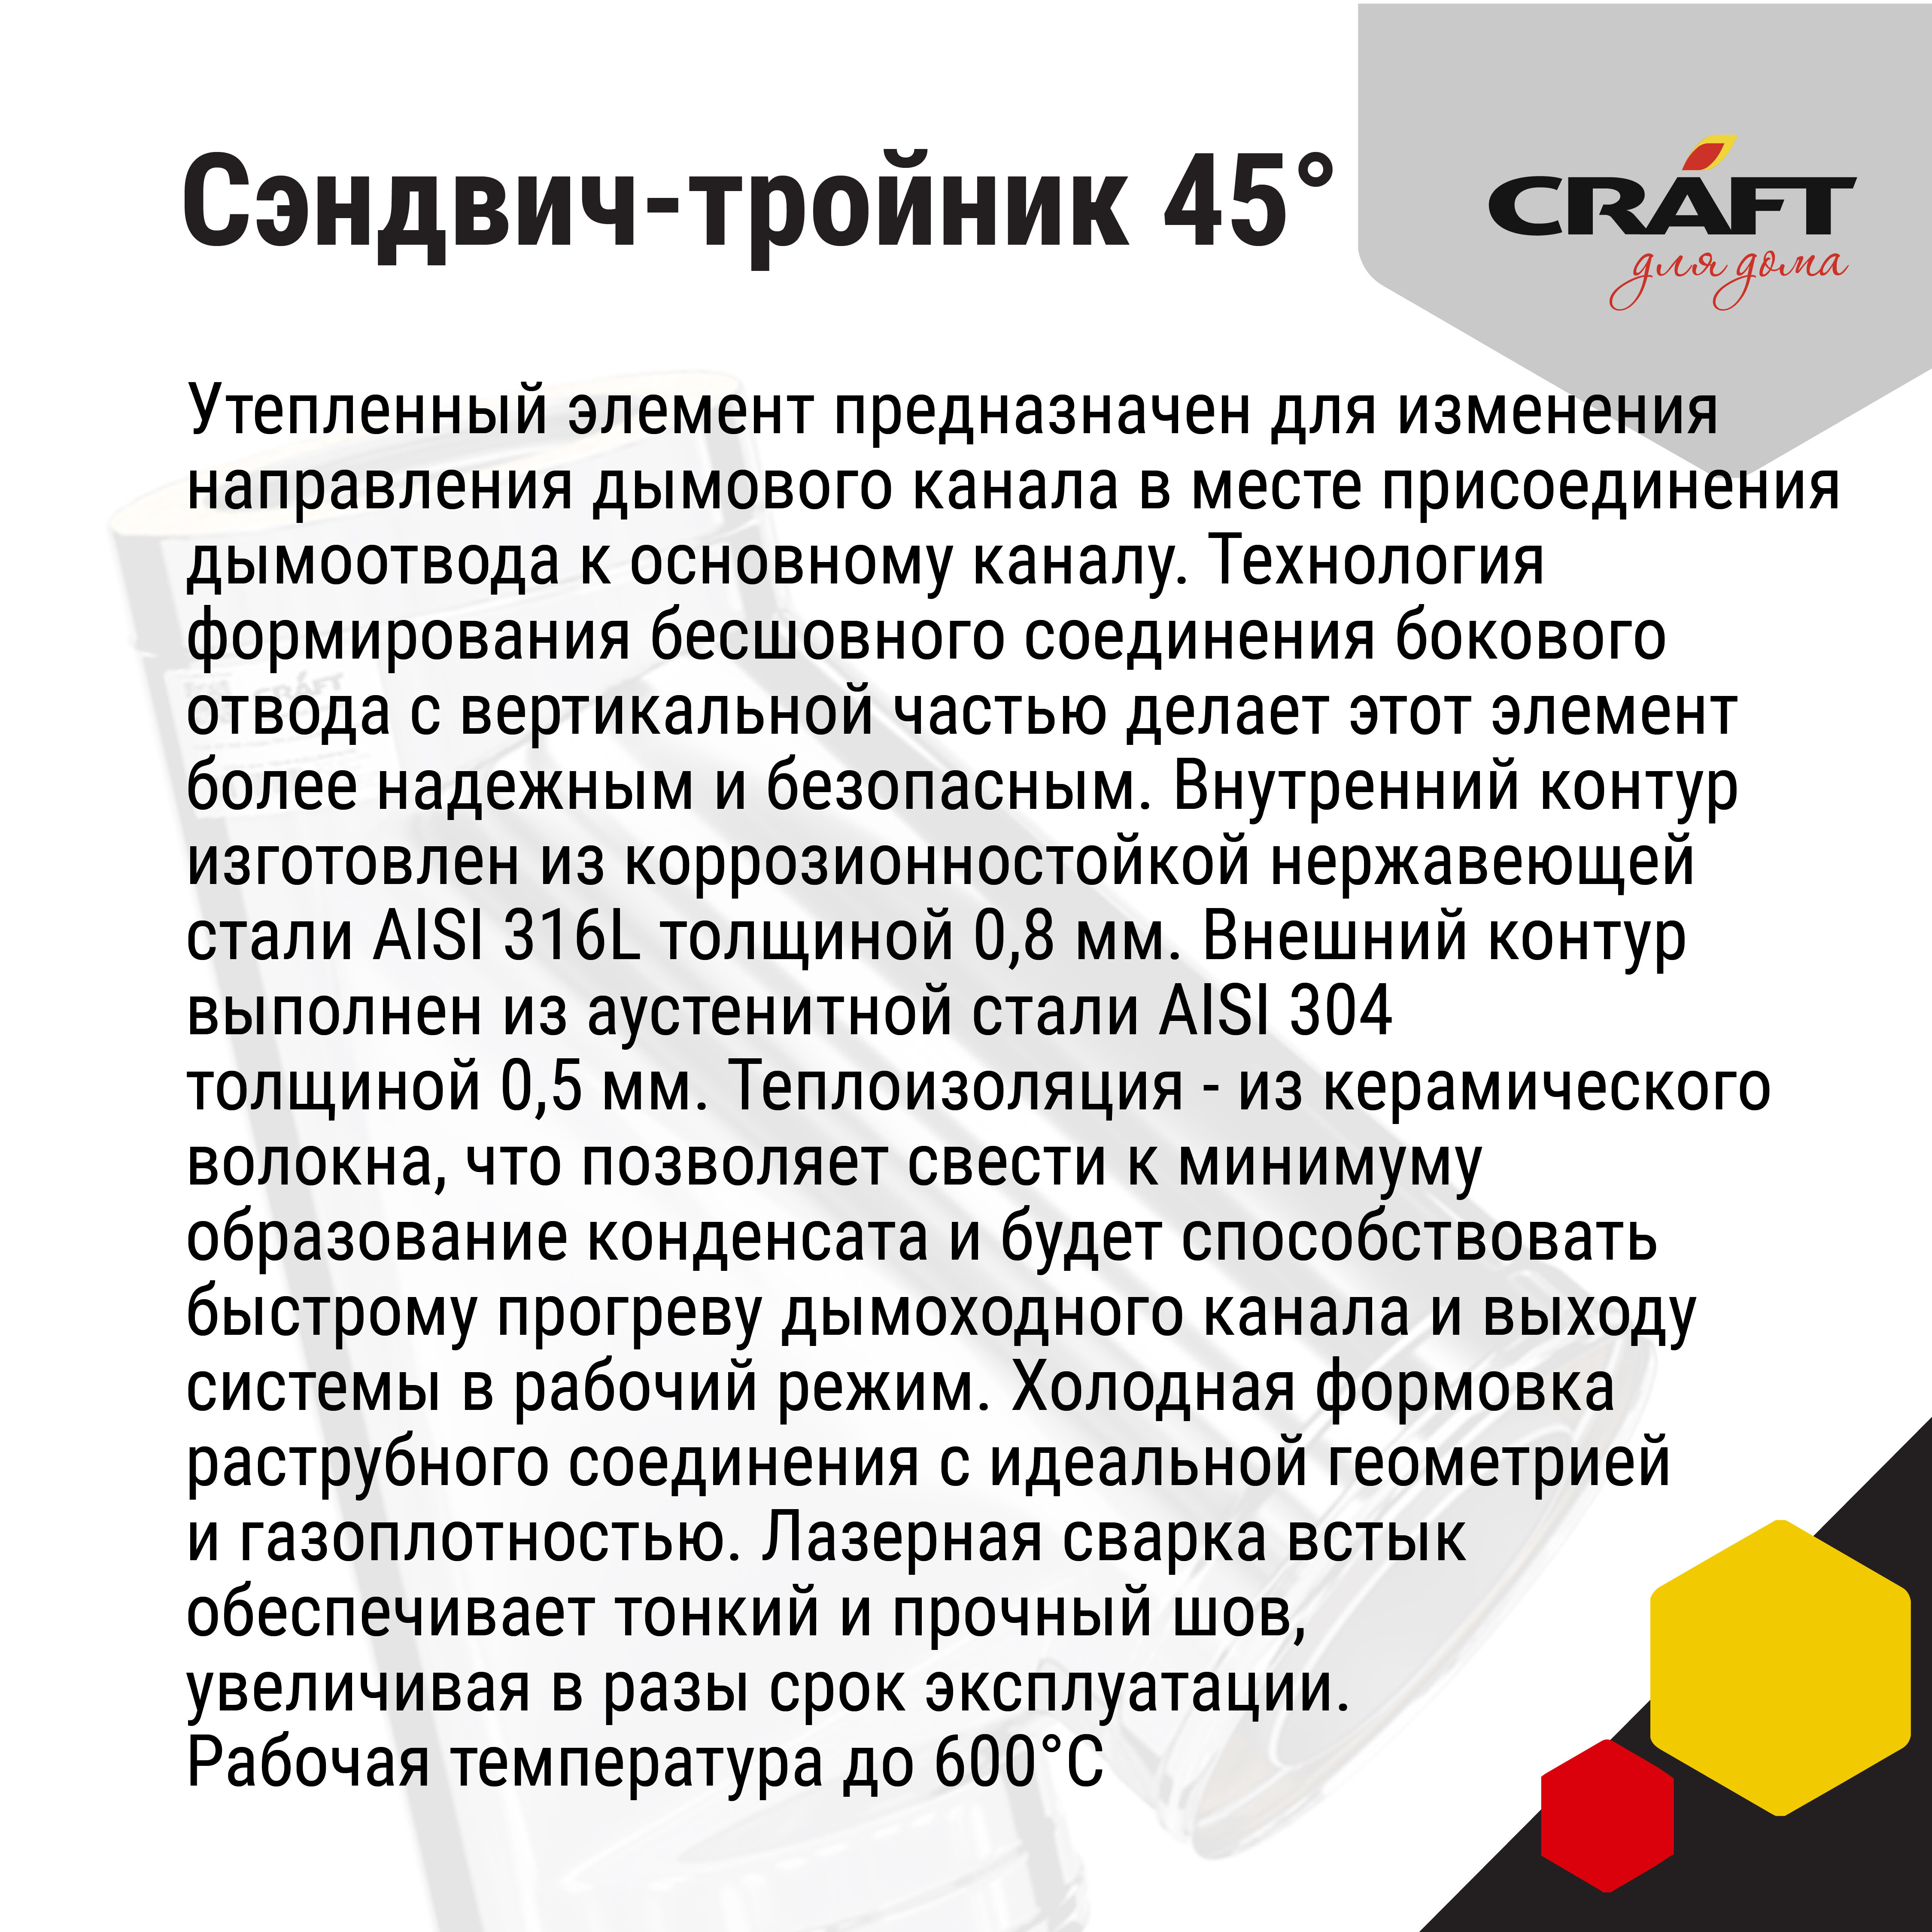 Craft HF-50B сэндвич-тройник 45° (316/0,8/304/0,5) Ф130х230 - фотография № 4